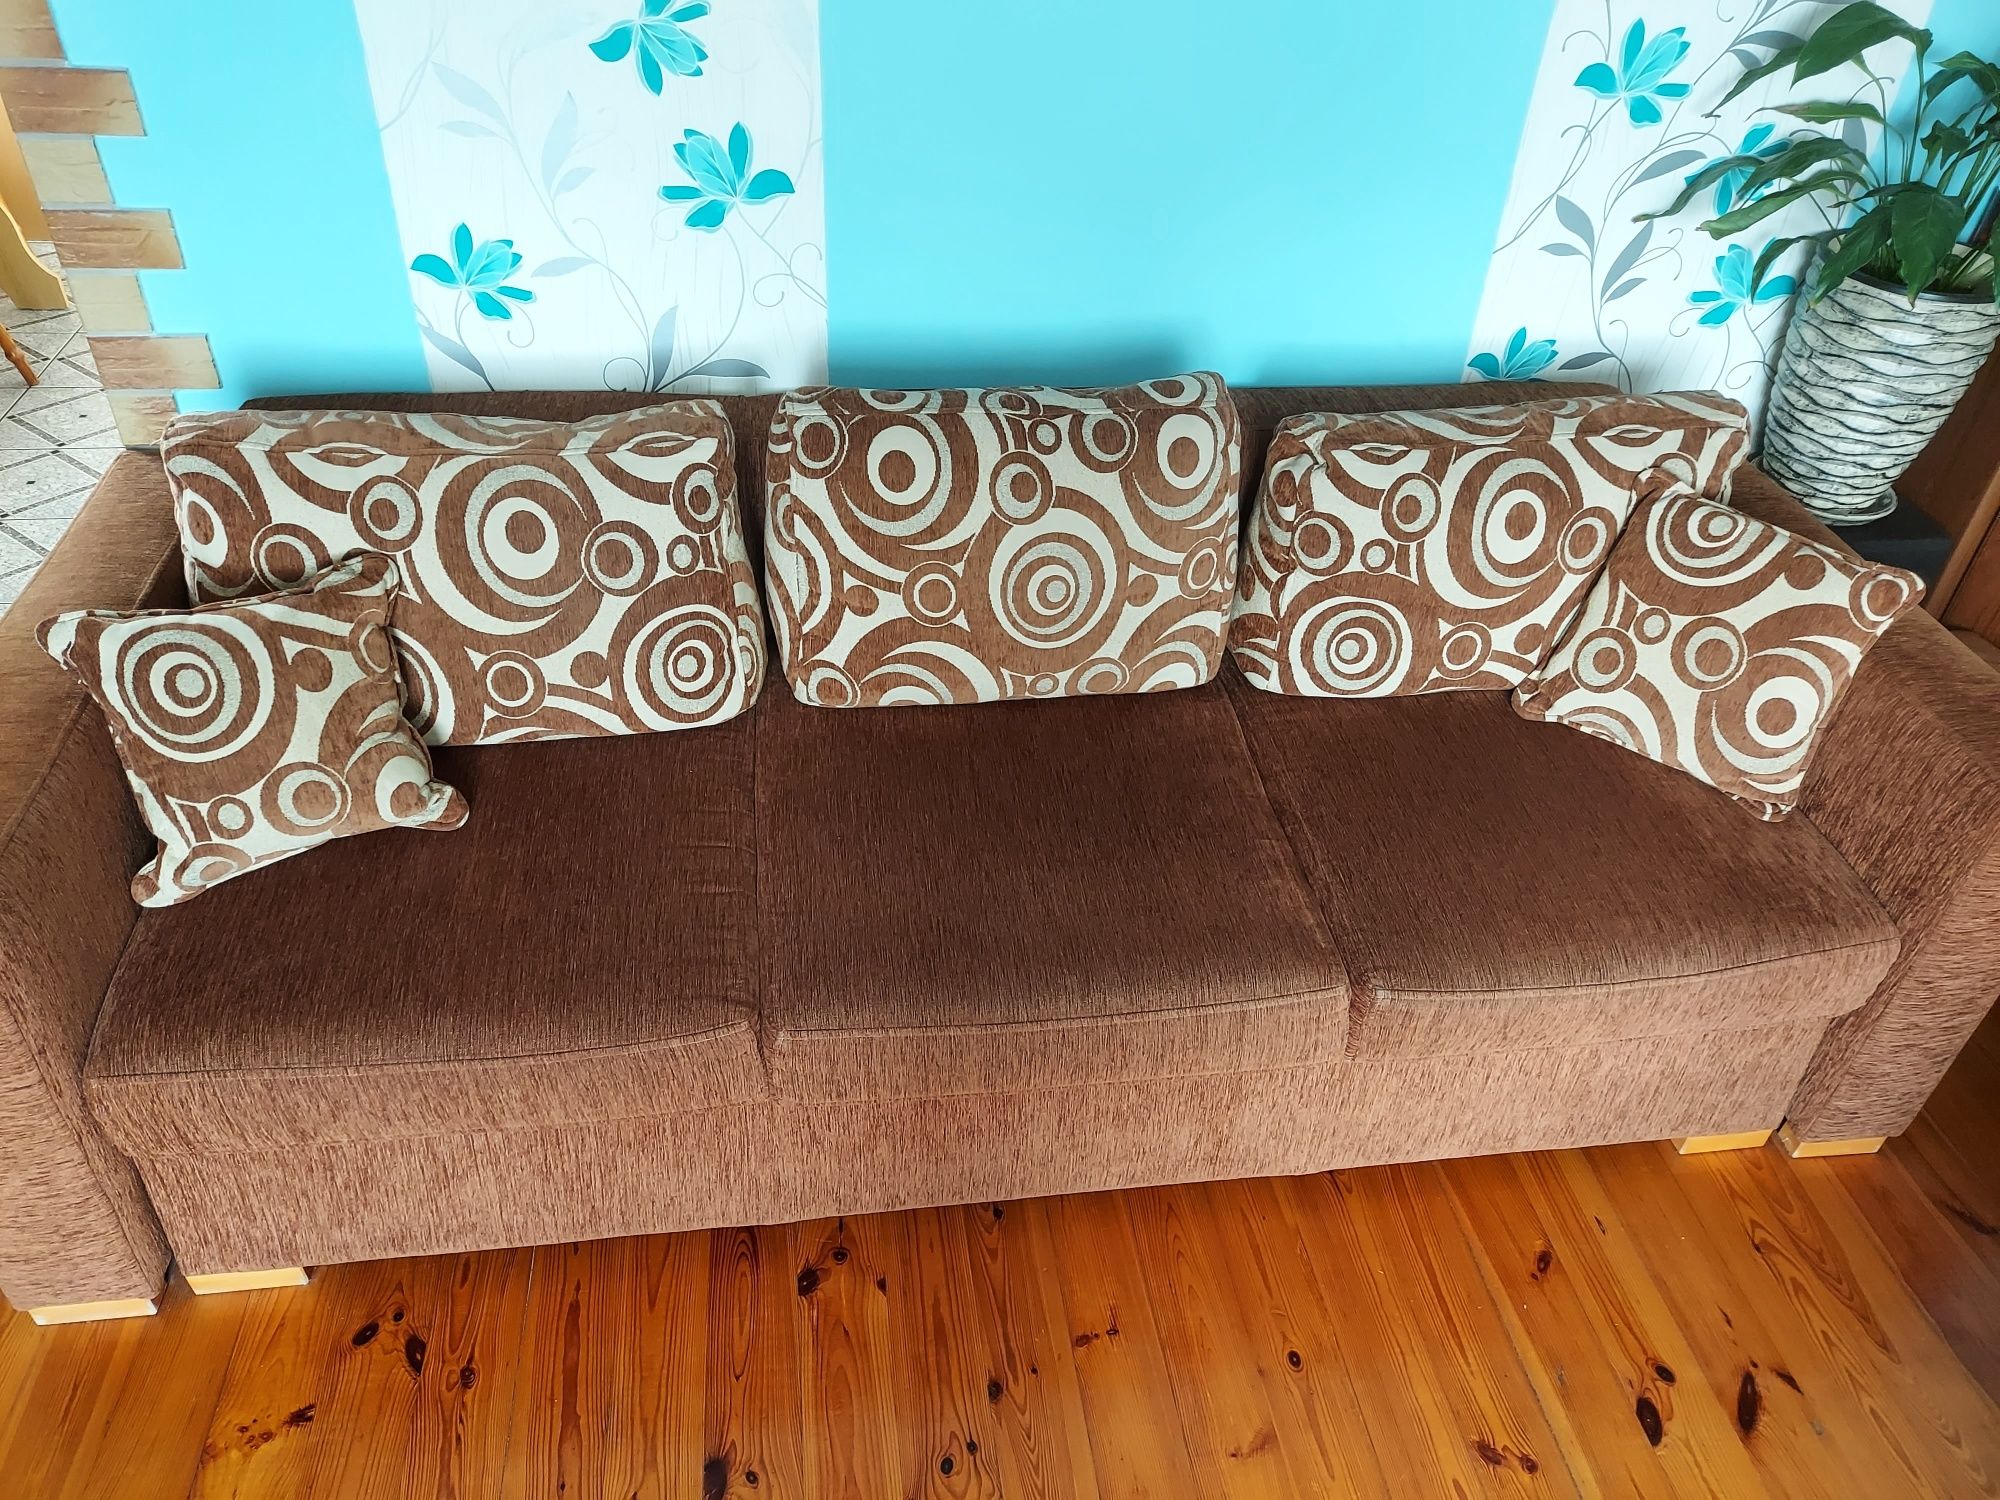 Zestaw wypoczynkowy - sofa z funkcją spania i pojemnikiem na pościel